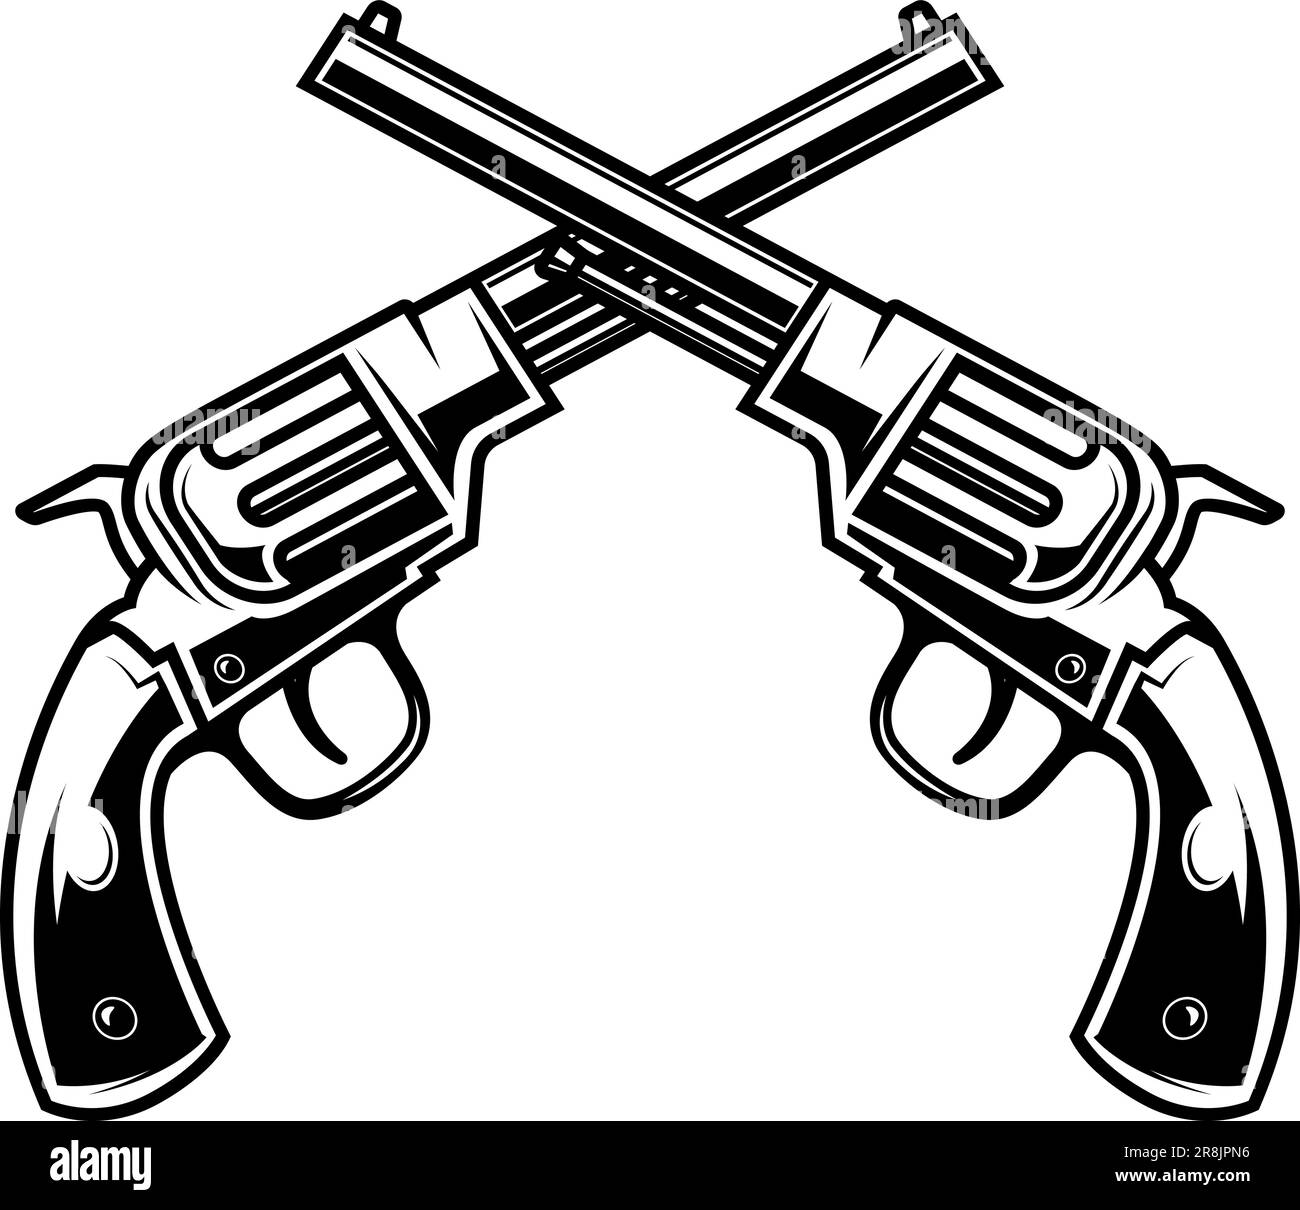 Klassischer Revolver in Schwarz und Weiß, perfekt für Western- oder Retro-Designs. Verwende es für Poster, Logos, T-Shirts Stock Vektor